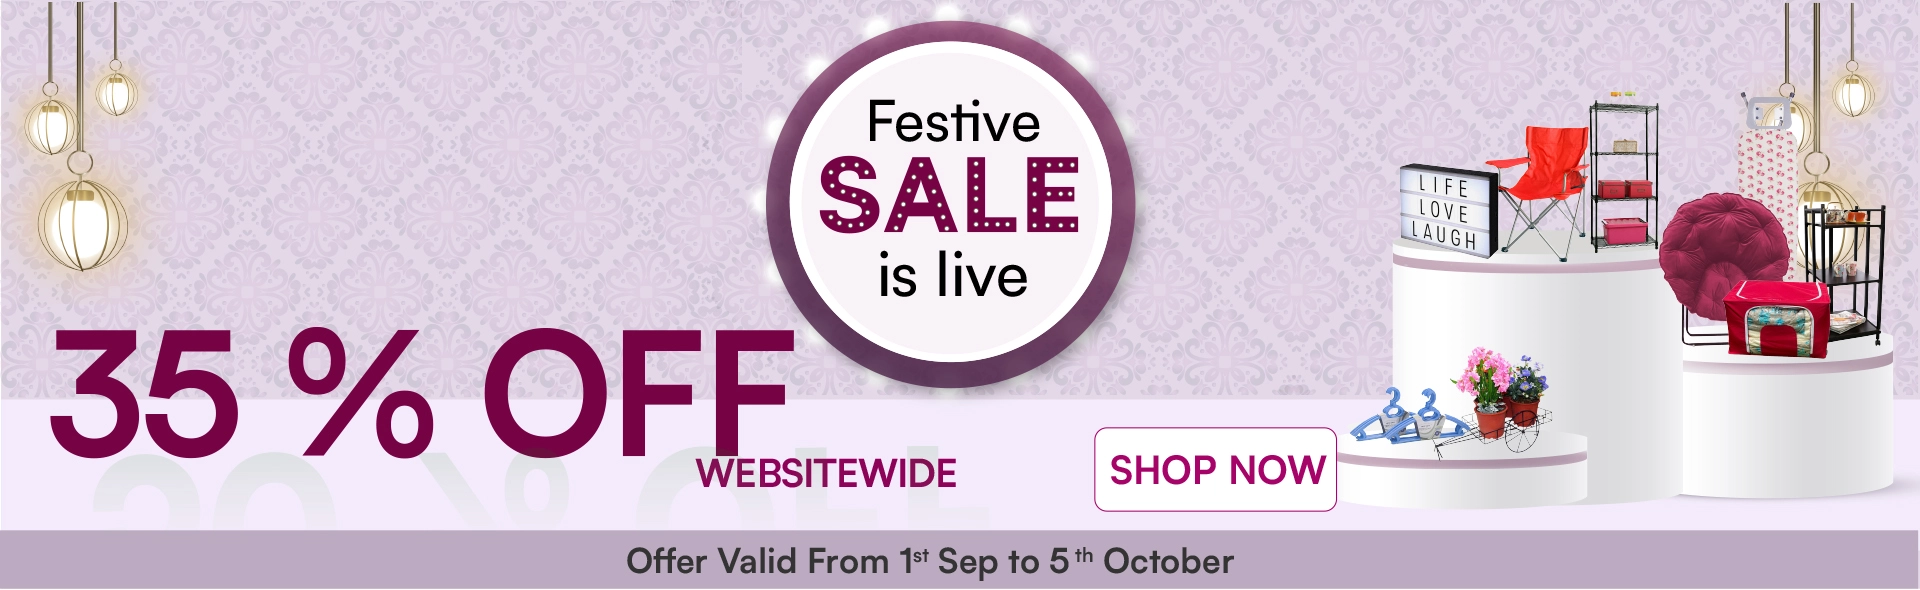 Festive Sale 35% Off